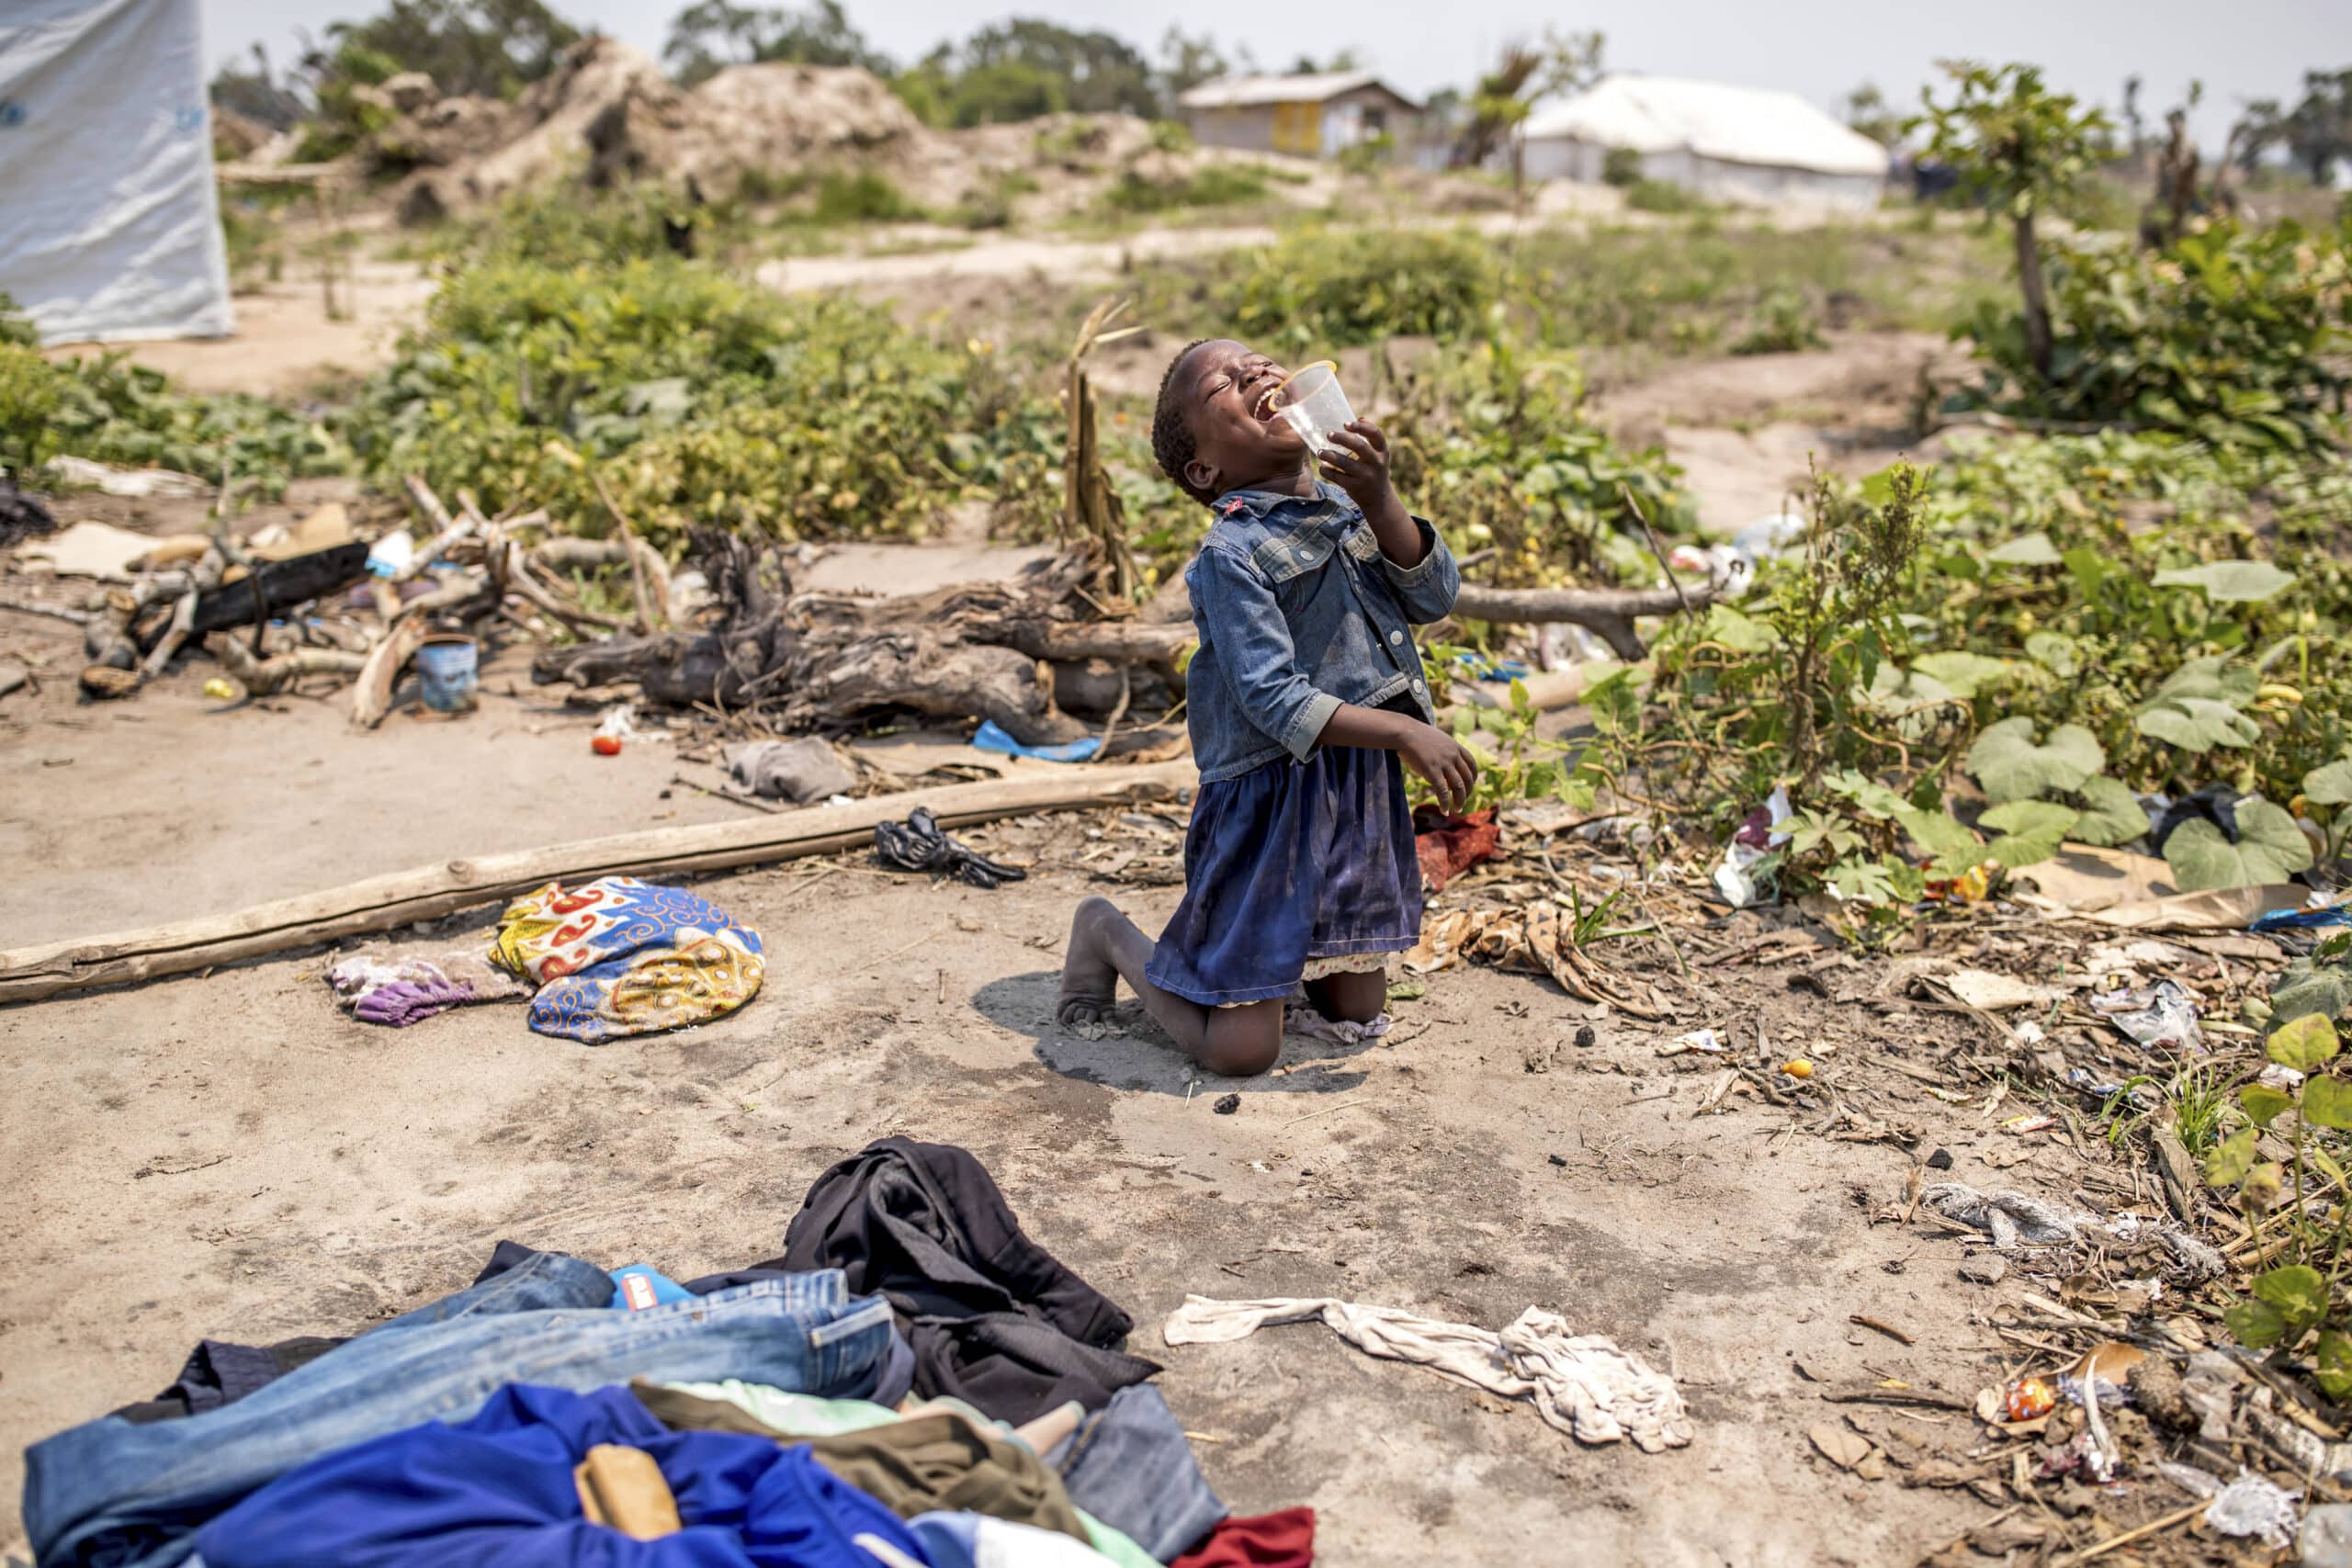 Ein junges Mädchen kniet in einem provisorischen Lager auf dem Boden und weint mit der Hand vor dem Mund. Um sie herum liegen verstreute Kleidungsstücke und Trümmer, im Hintergrund sind Zelte und eine öde Landschaft zu sehen. © Fotografie Tomas Rodriguez